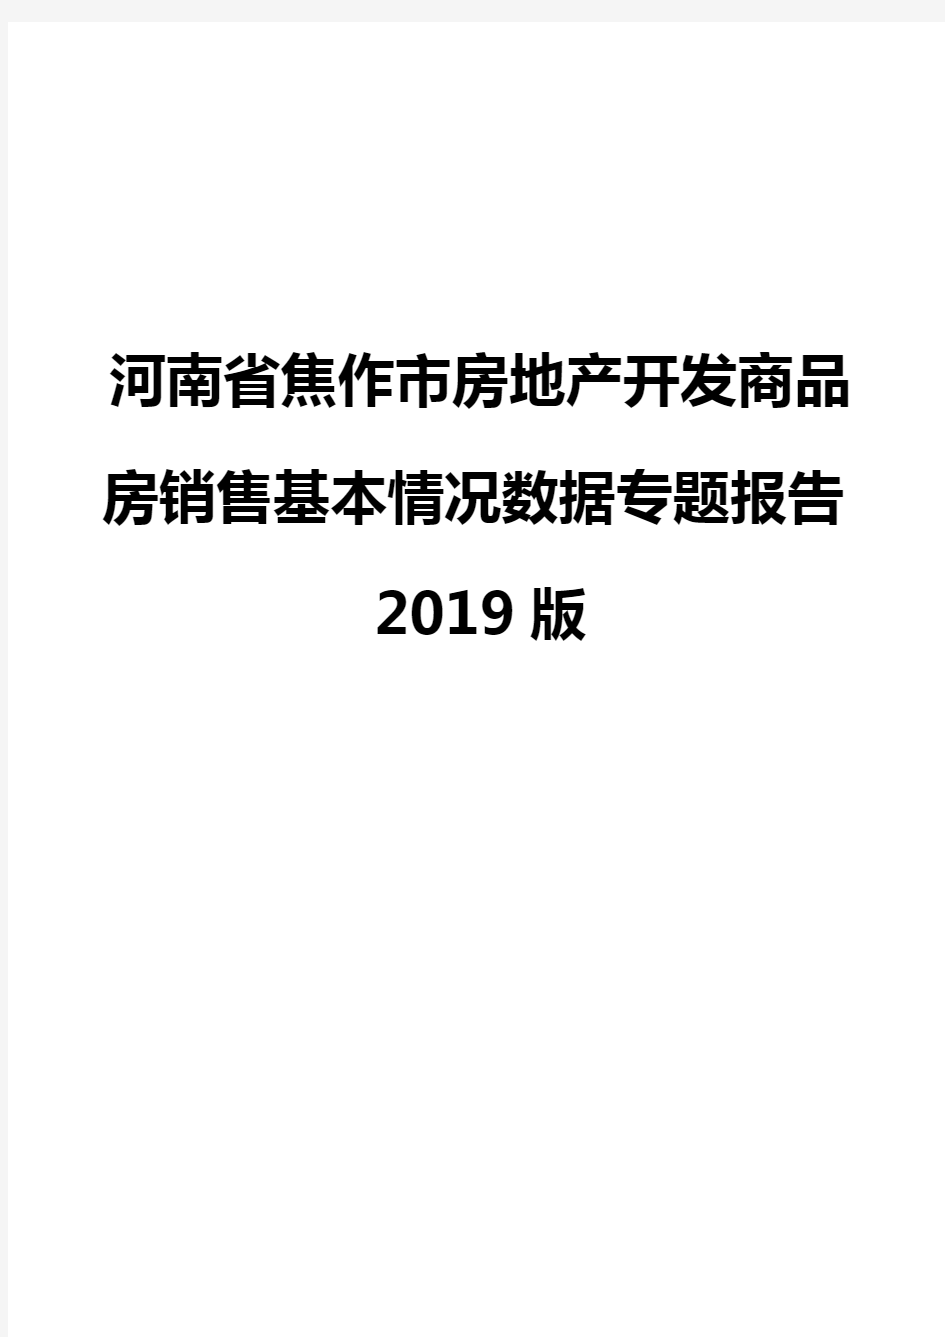 河南省焦作市房地产开发商品房销售基本情况数据专题报告2019版